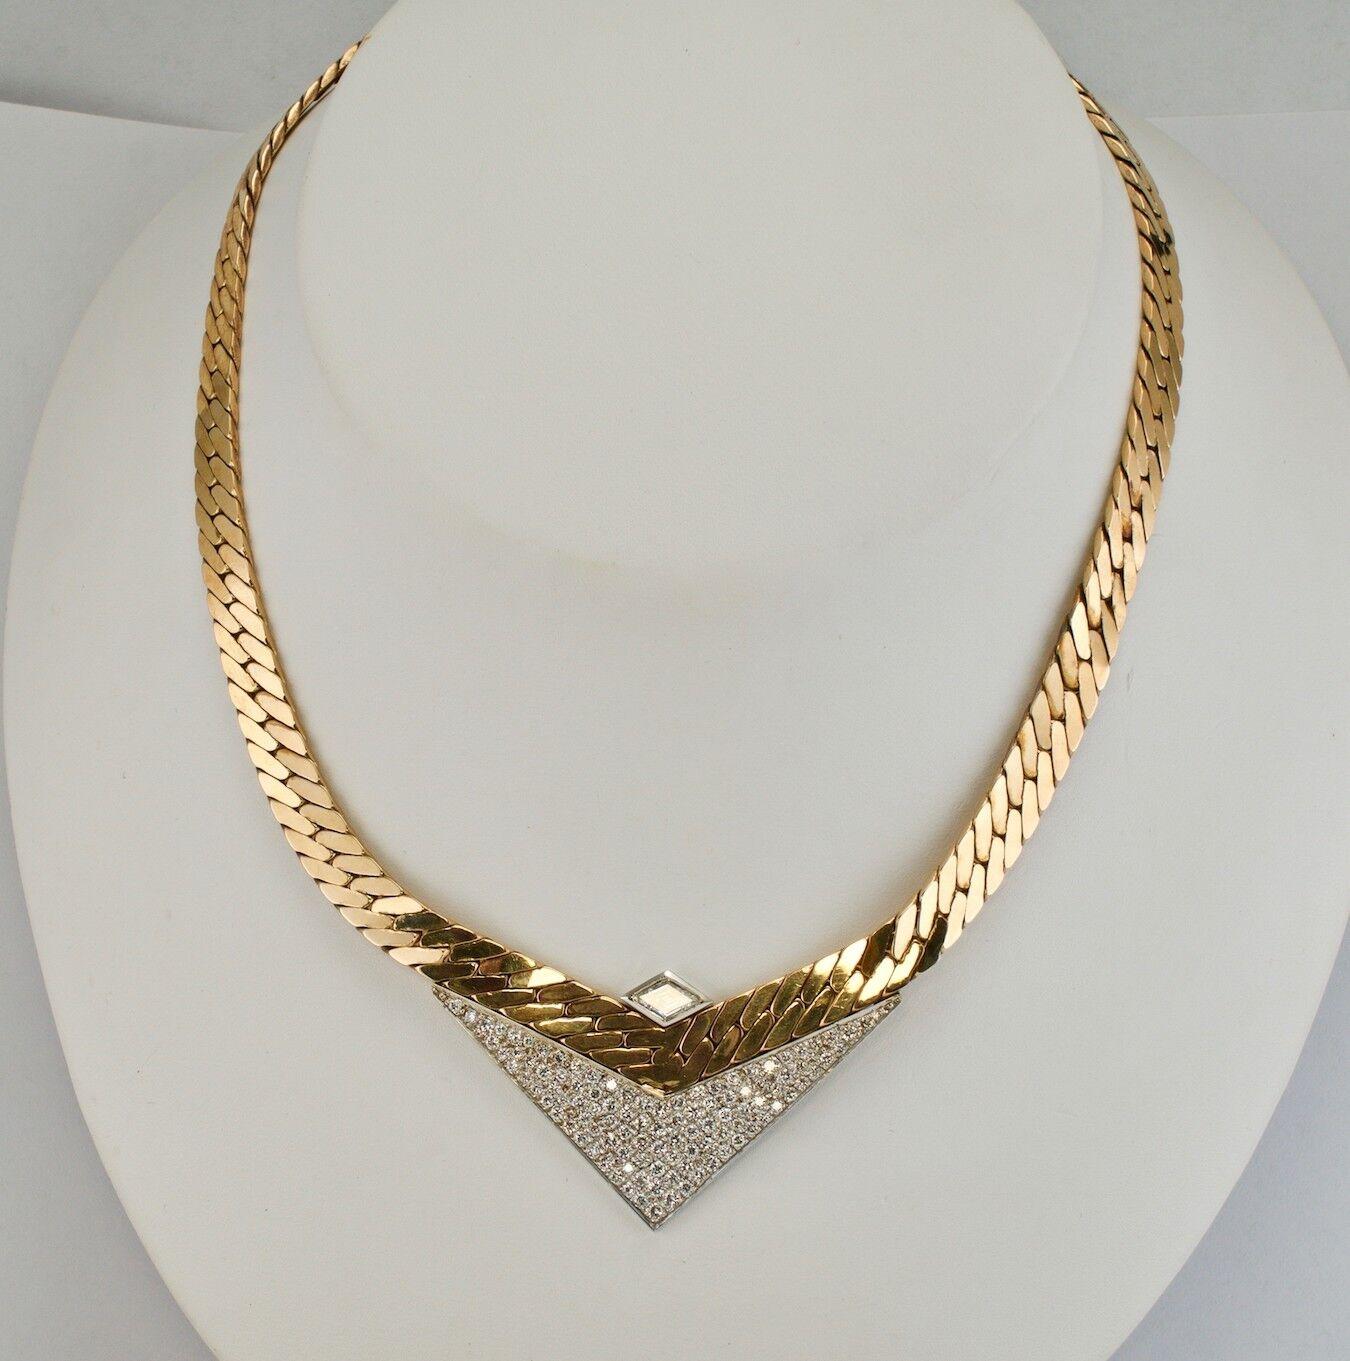 Diamant-Halskette Choker 18K & 14K Gold Geometrisches V von Sande Italien

Diese erstaunliche Vintage-Halskette wurde in Italien hergestellt und ist auf der Rückseite mit Sande gestempelt. Die Halskette ist aus einer Kombination aus massivem